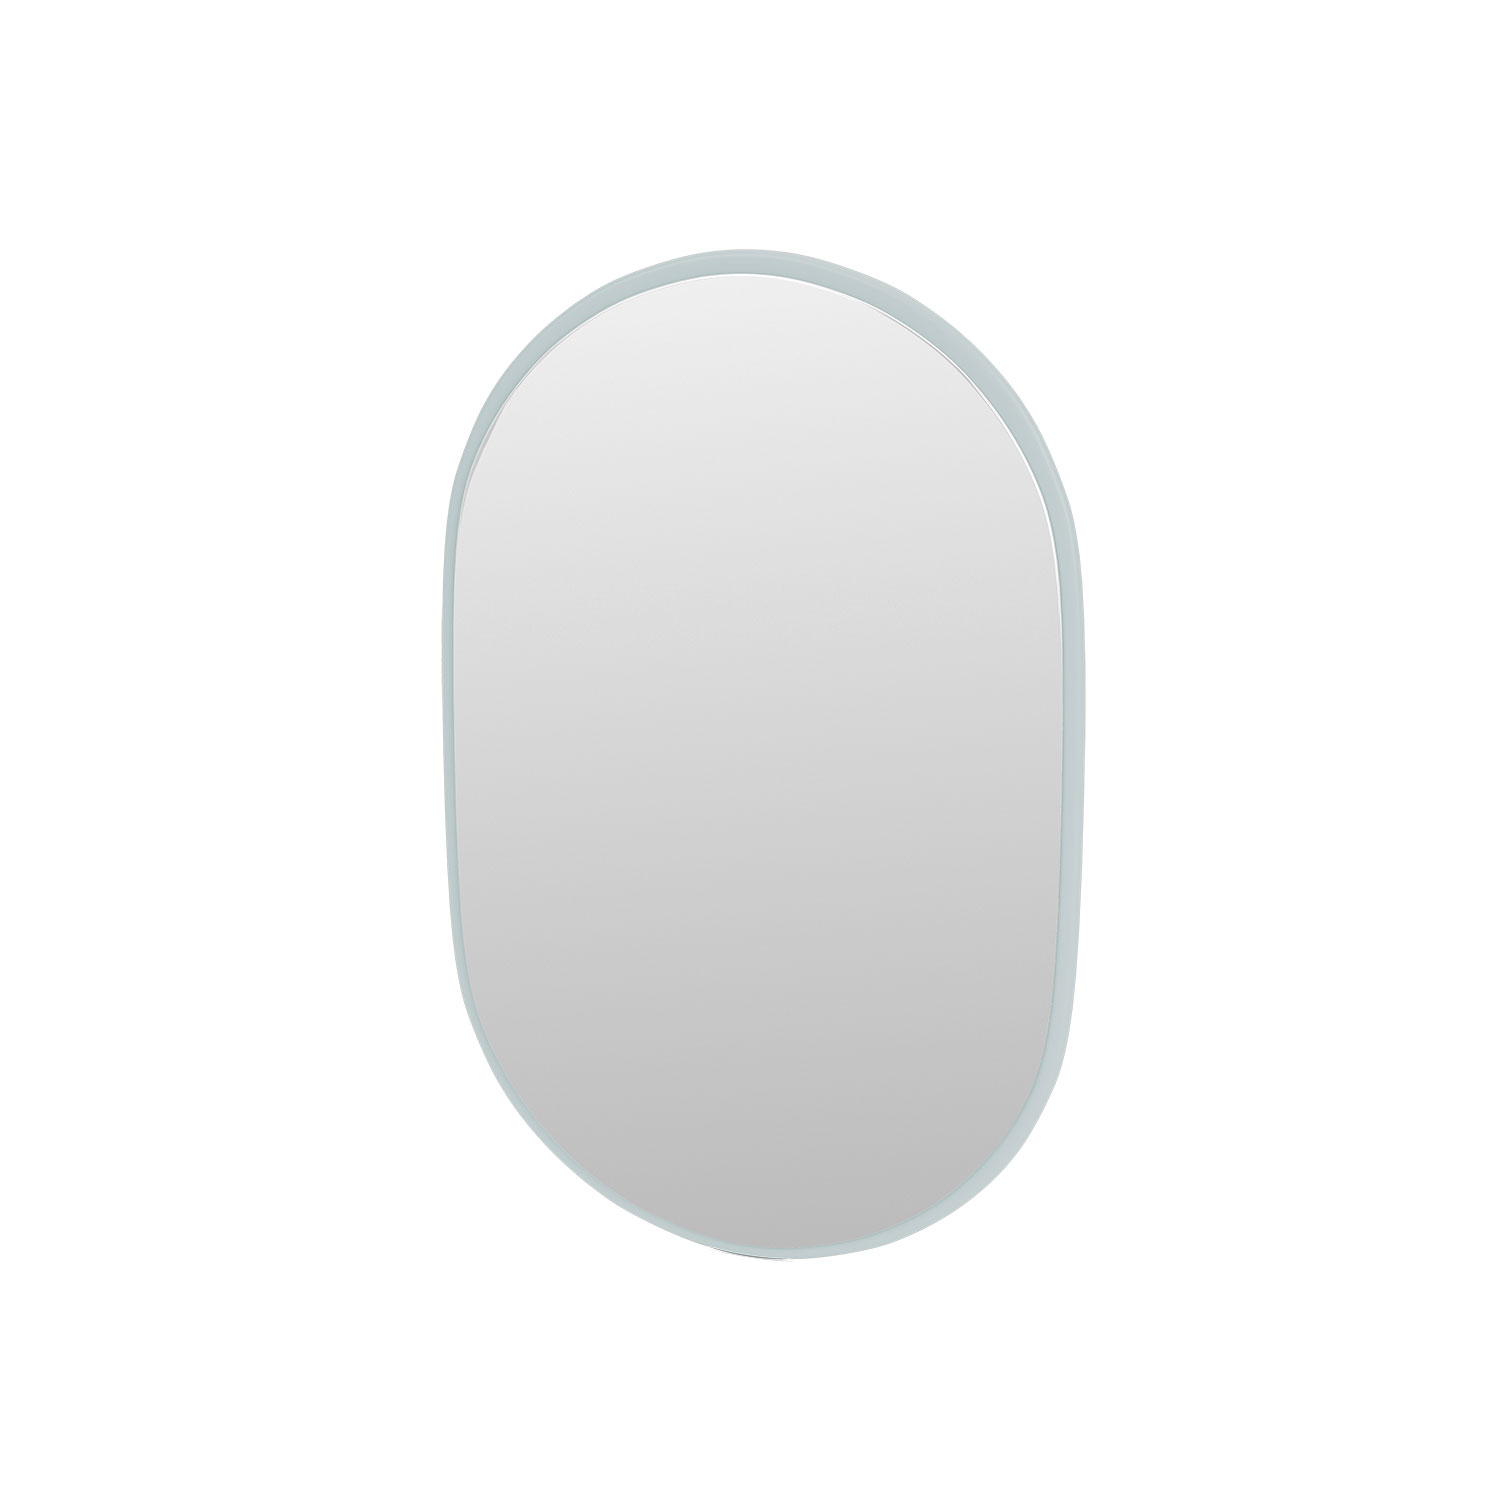 LOOK oval mirror, Flint